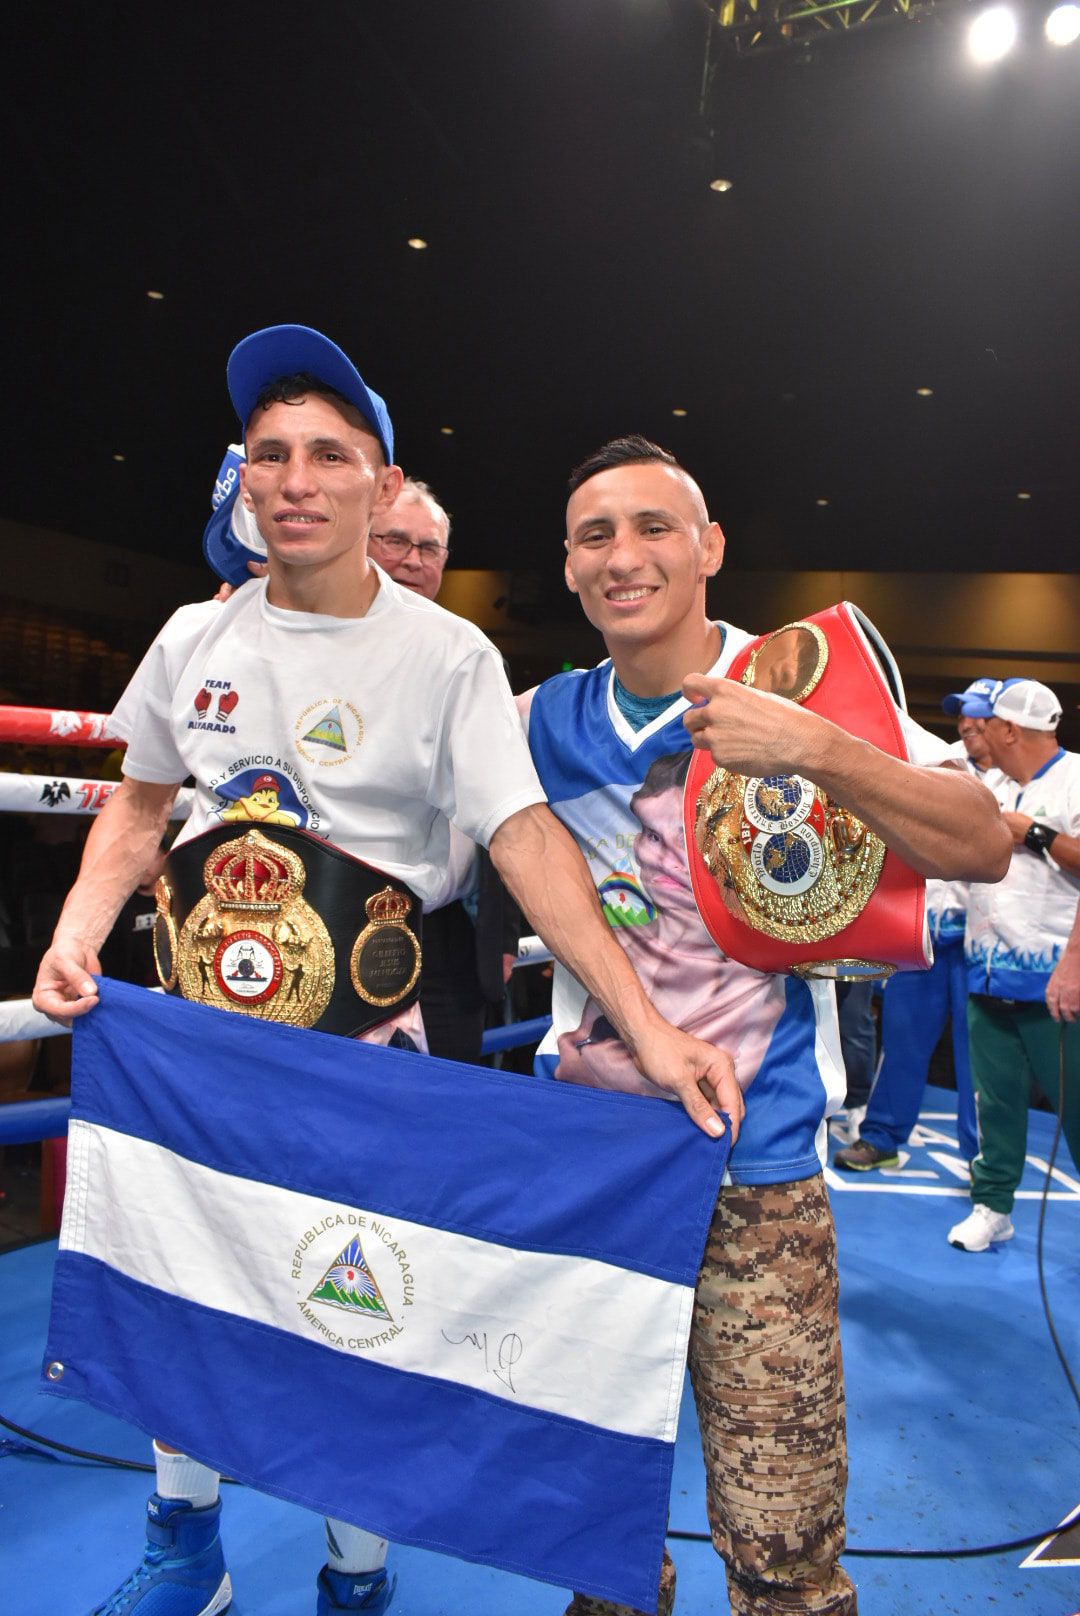 Los gemelos nicaragüenses celebran la victoria de René Alvarado (izquierda) tras ganar el campeonato mundial Super Pluma de la AMB el 23 de noviembre pasado (Foto cortesía de Bayron Saavedra)